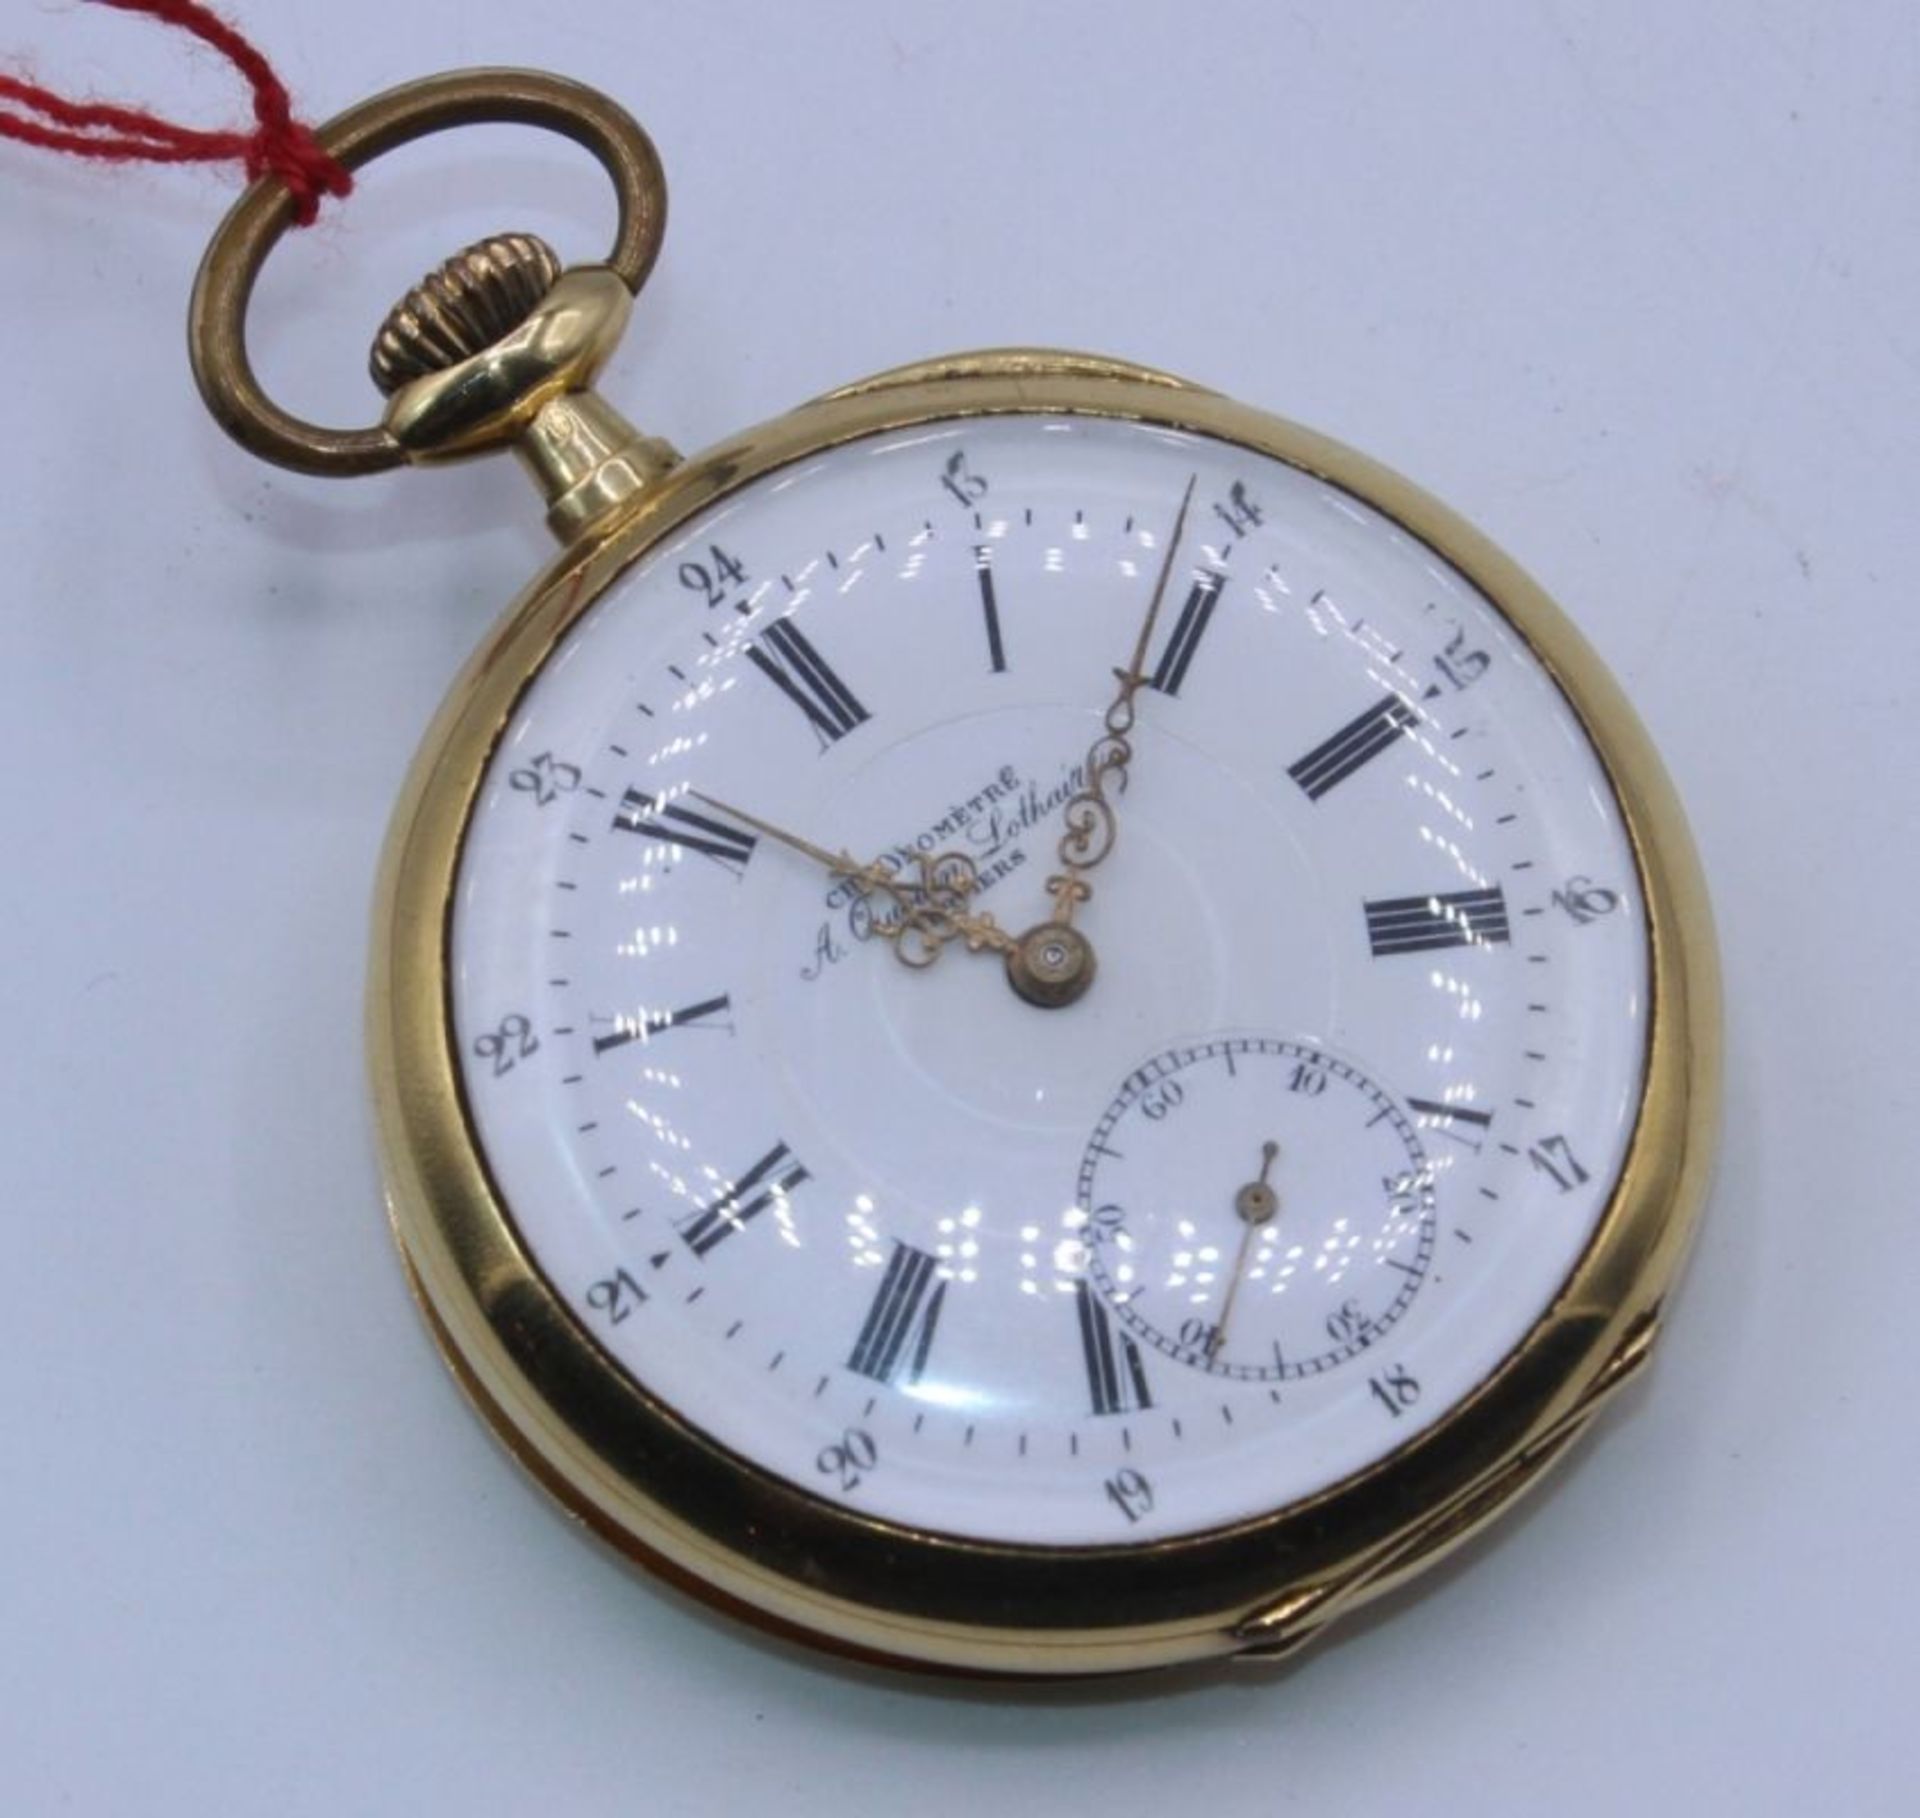 Goldene offene Herrentaschenuhr Gehäuse und 1 Deckel Gelbgold gest. 18 K, No. 189183, Chronometre A.